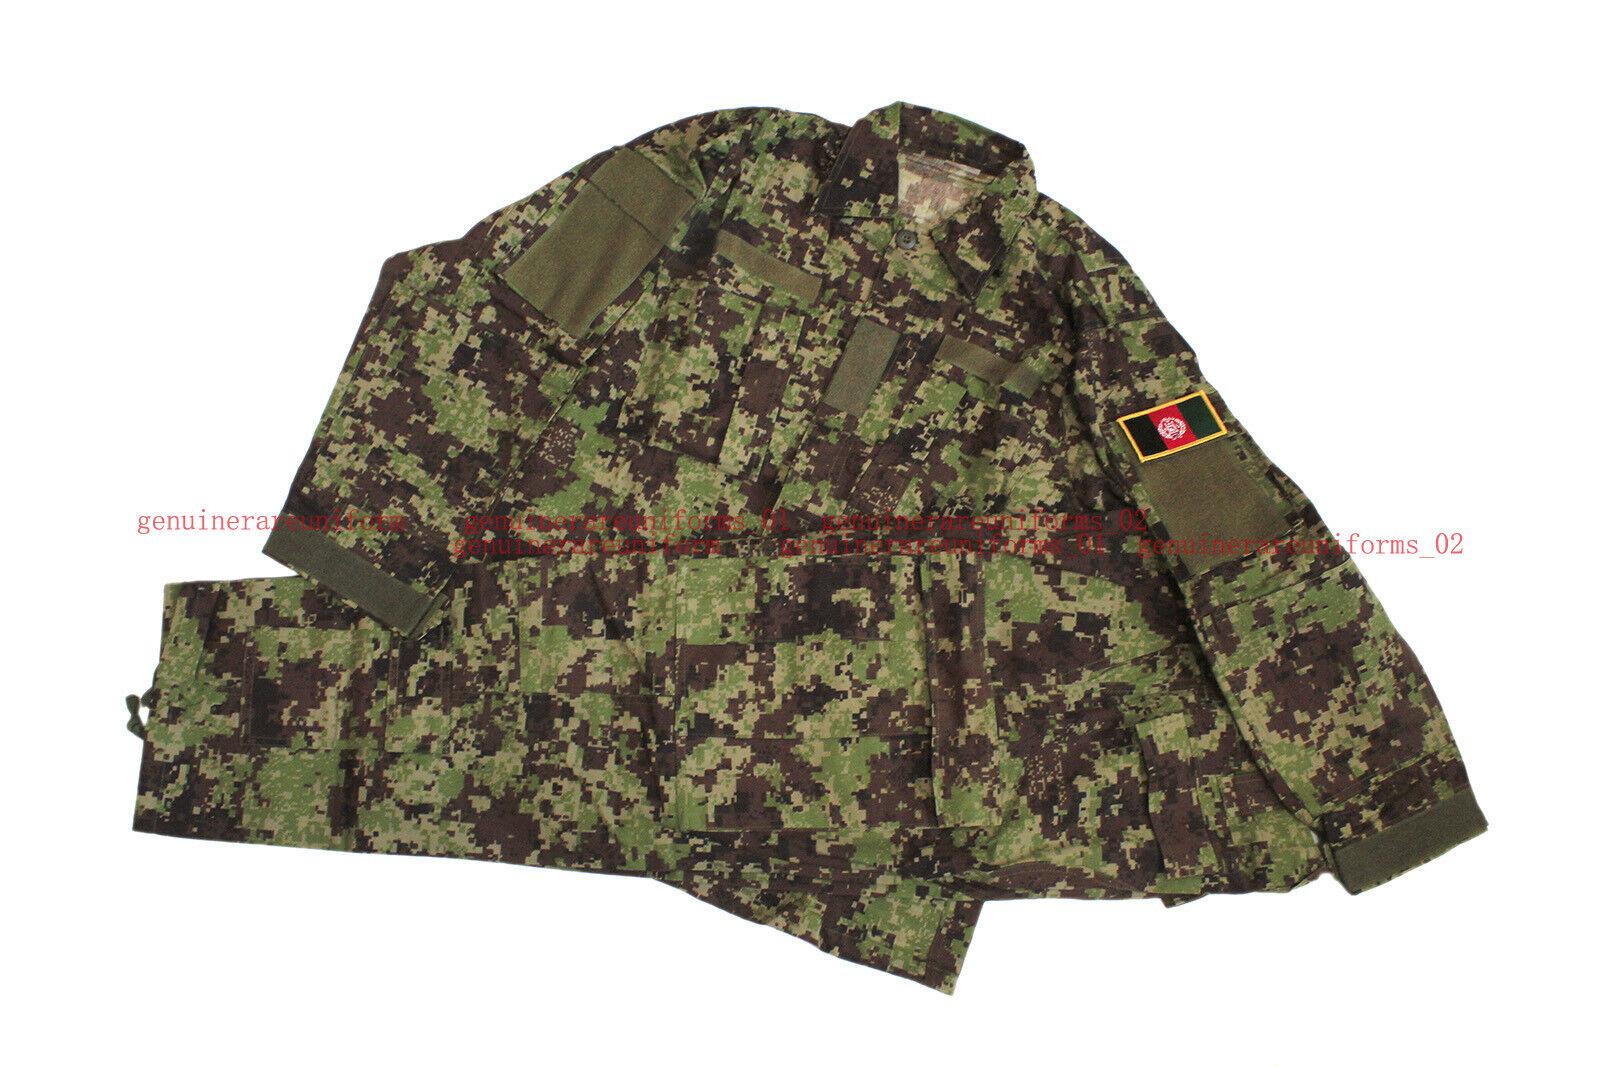 Rare Genuine Afghan National Army Woodland Digital Camo ACU Uniforms Size SS